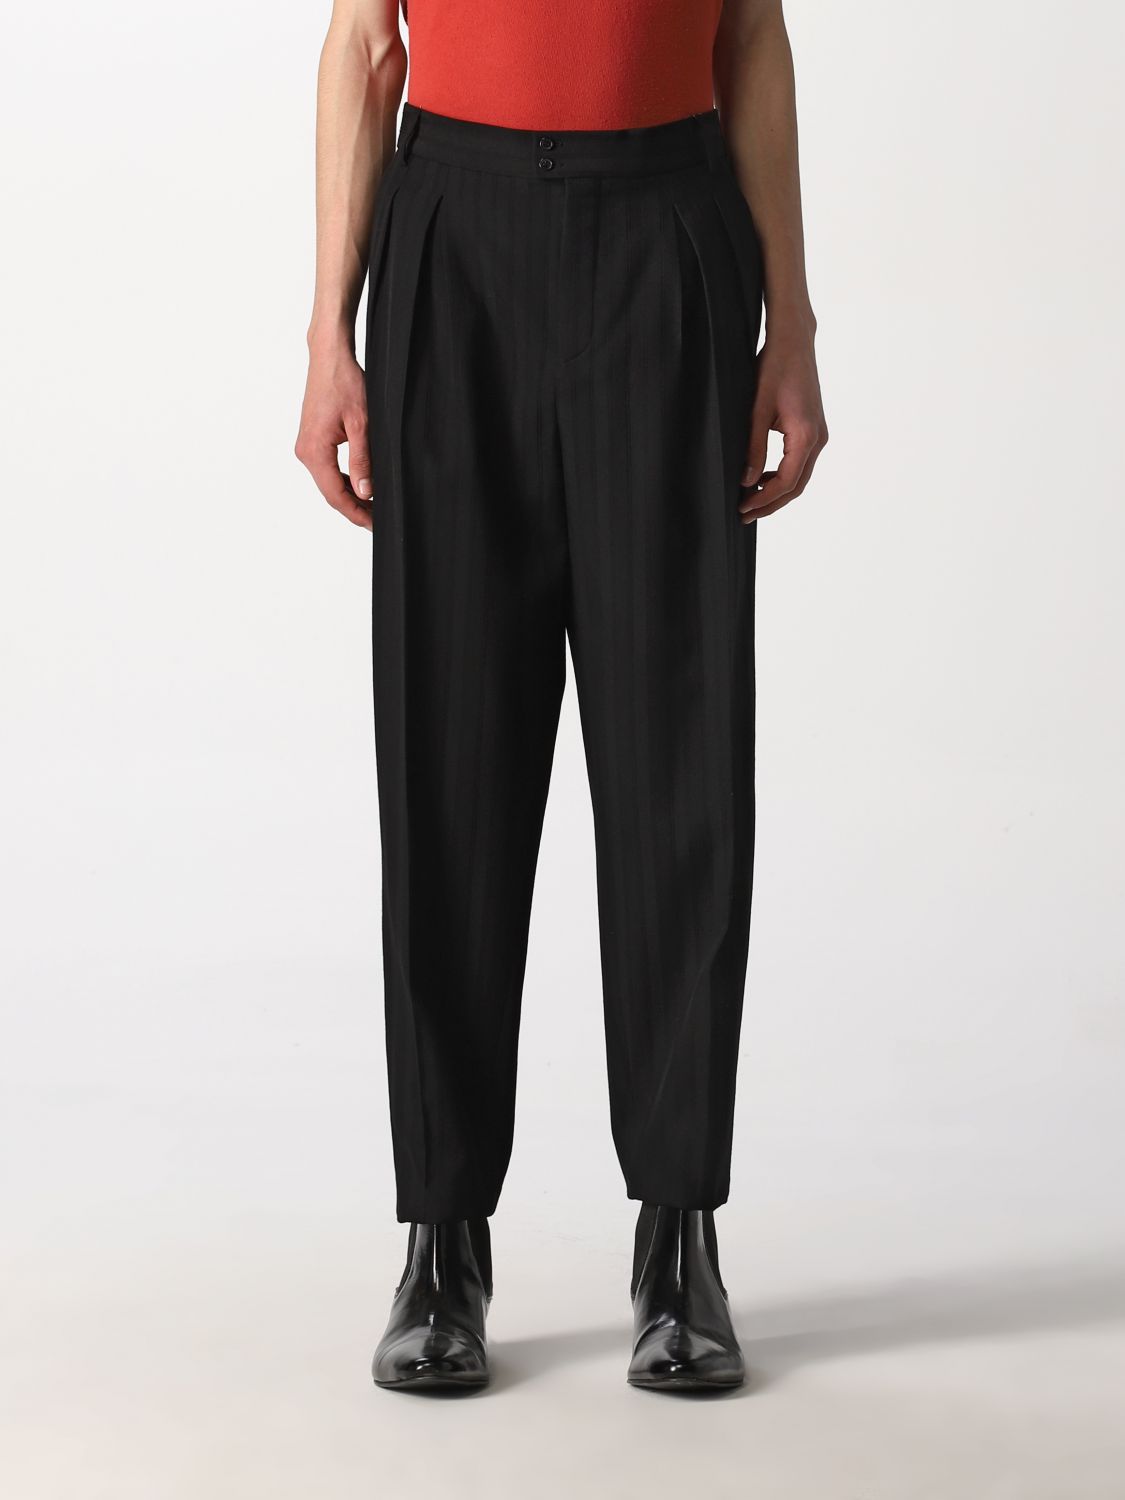 Pants Saint Laurent: Saint Laurent wool pants black 1